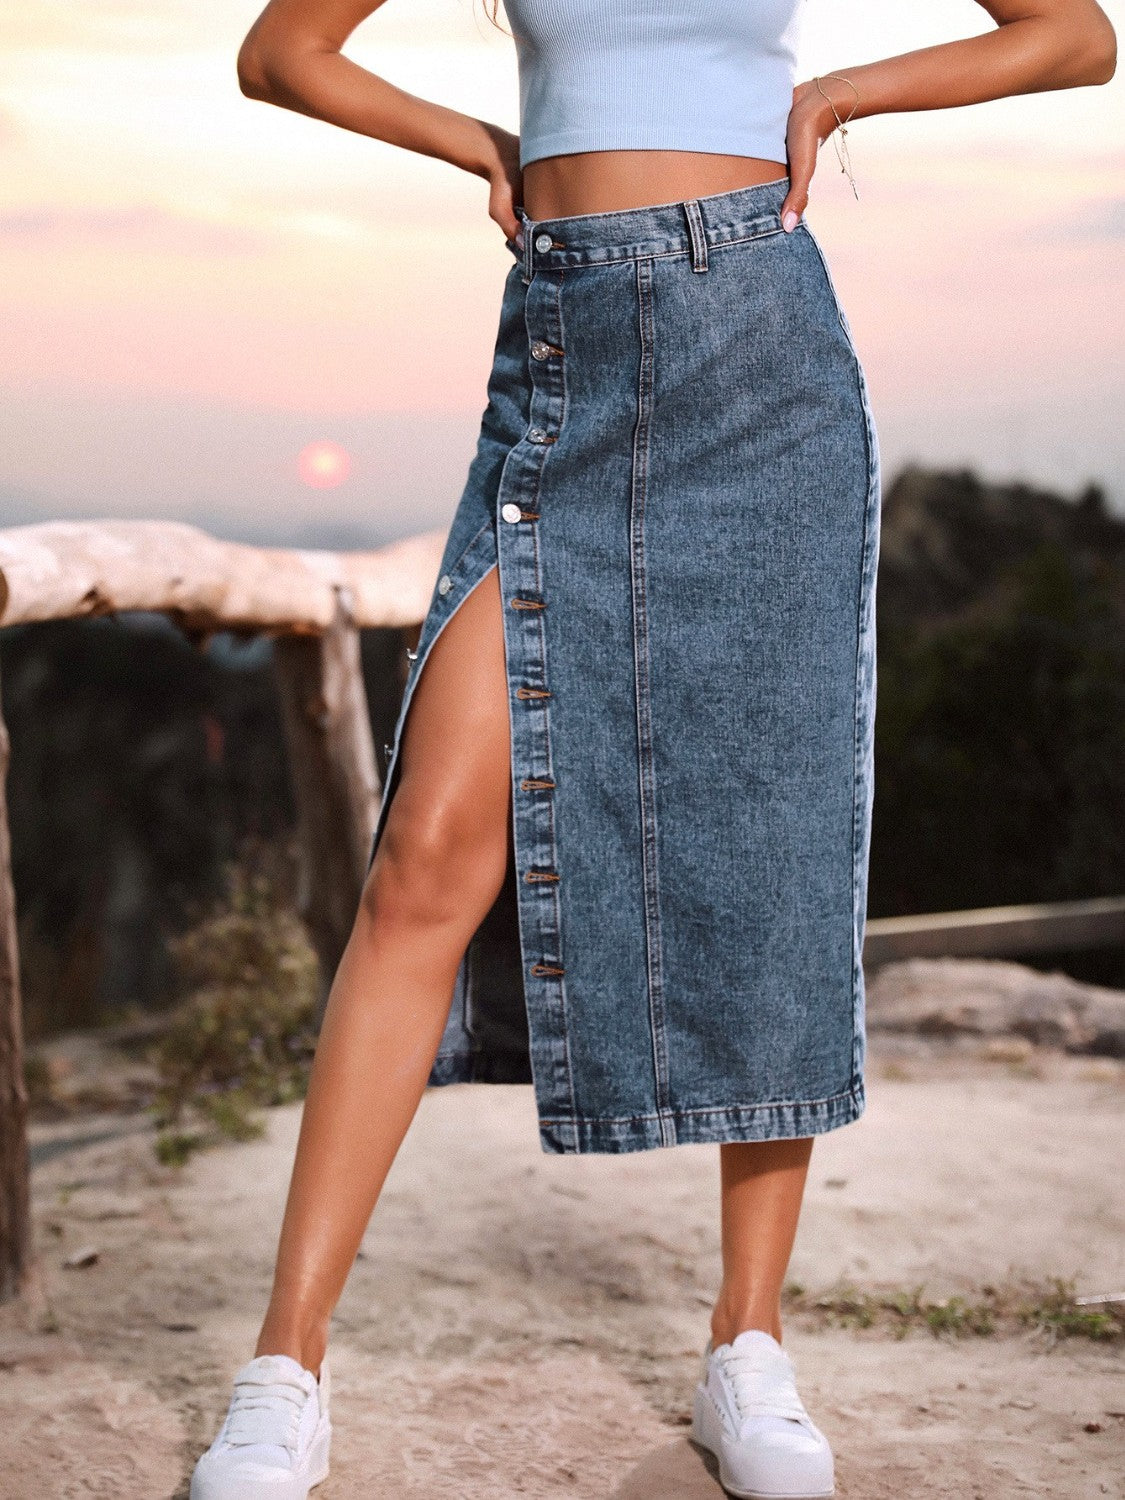 BCBG Max Azria Jeans Denim Skirt Women's 8 Front Slit Long Below Knee  Designer | eBay